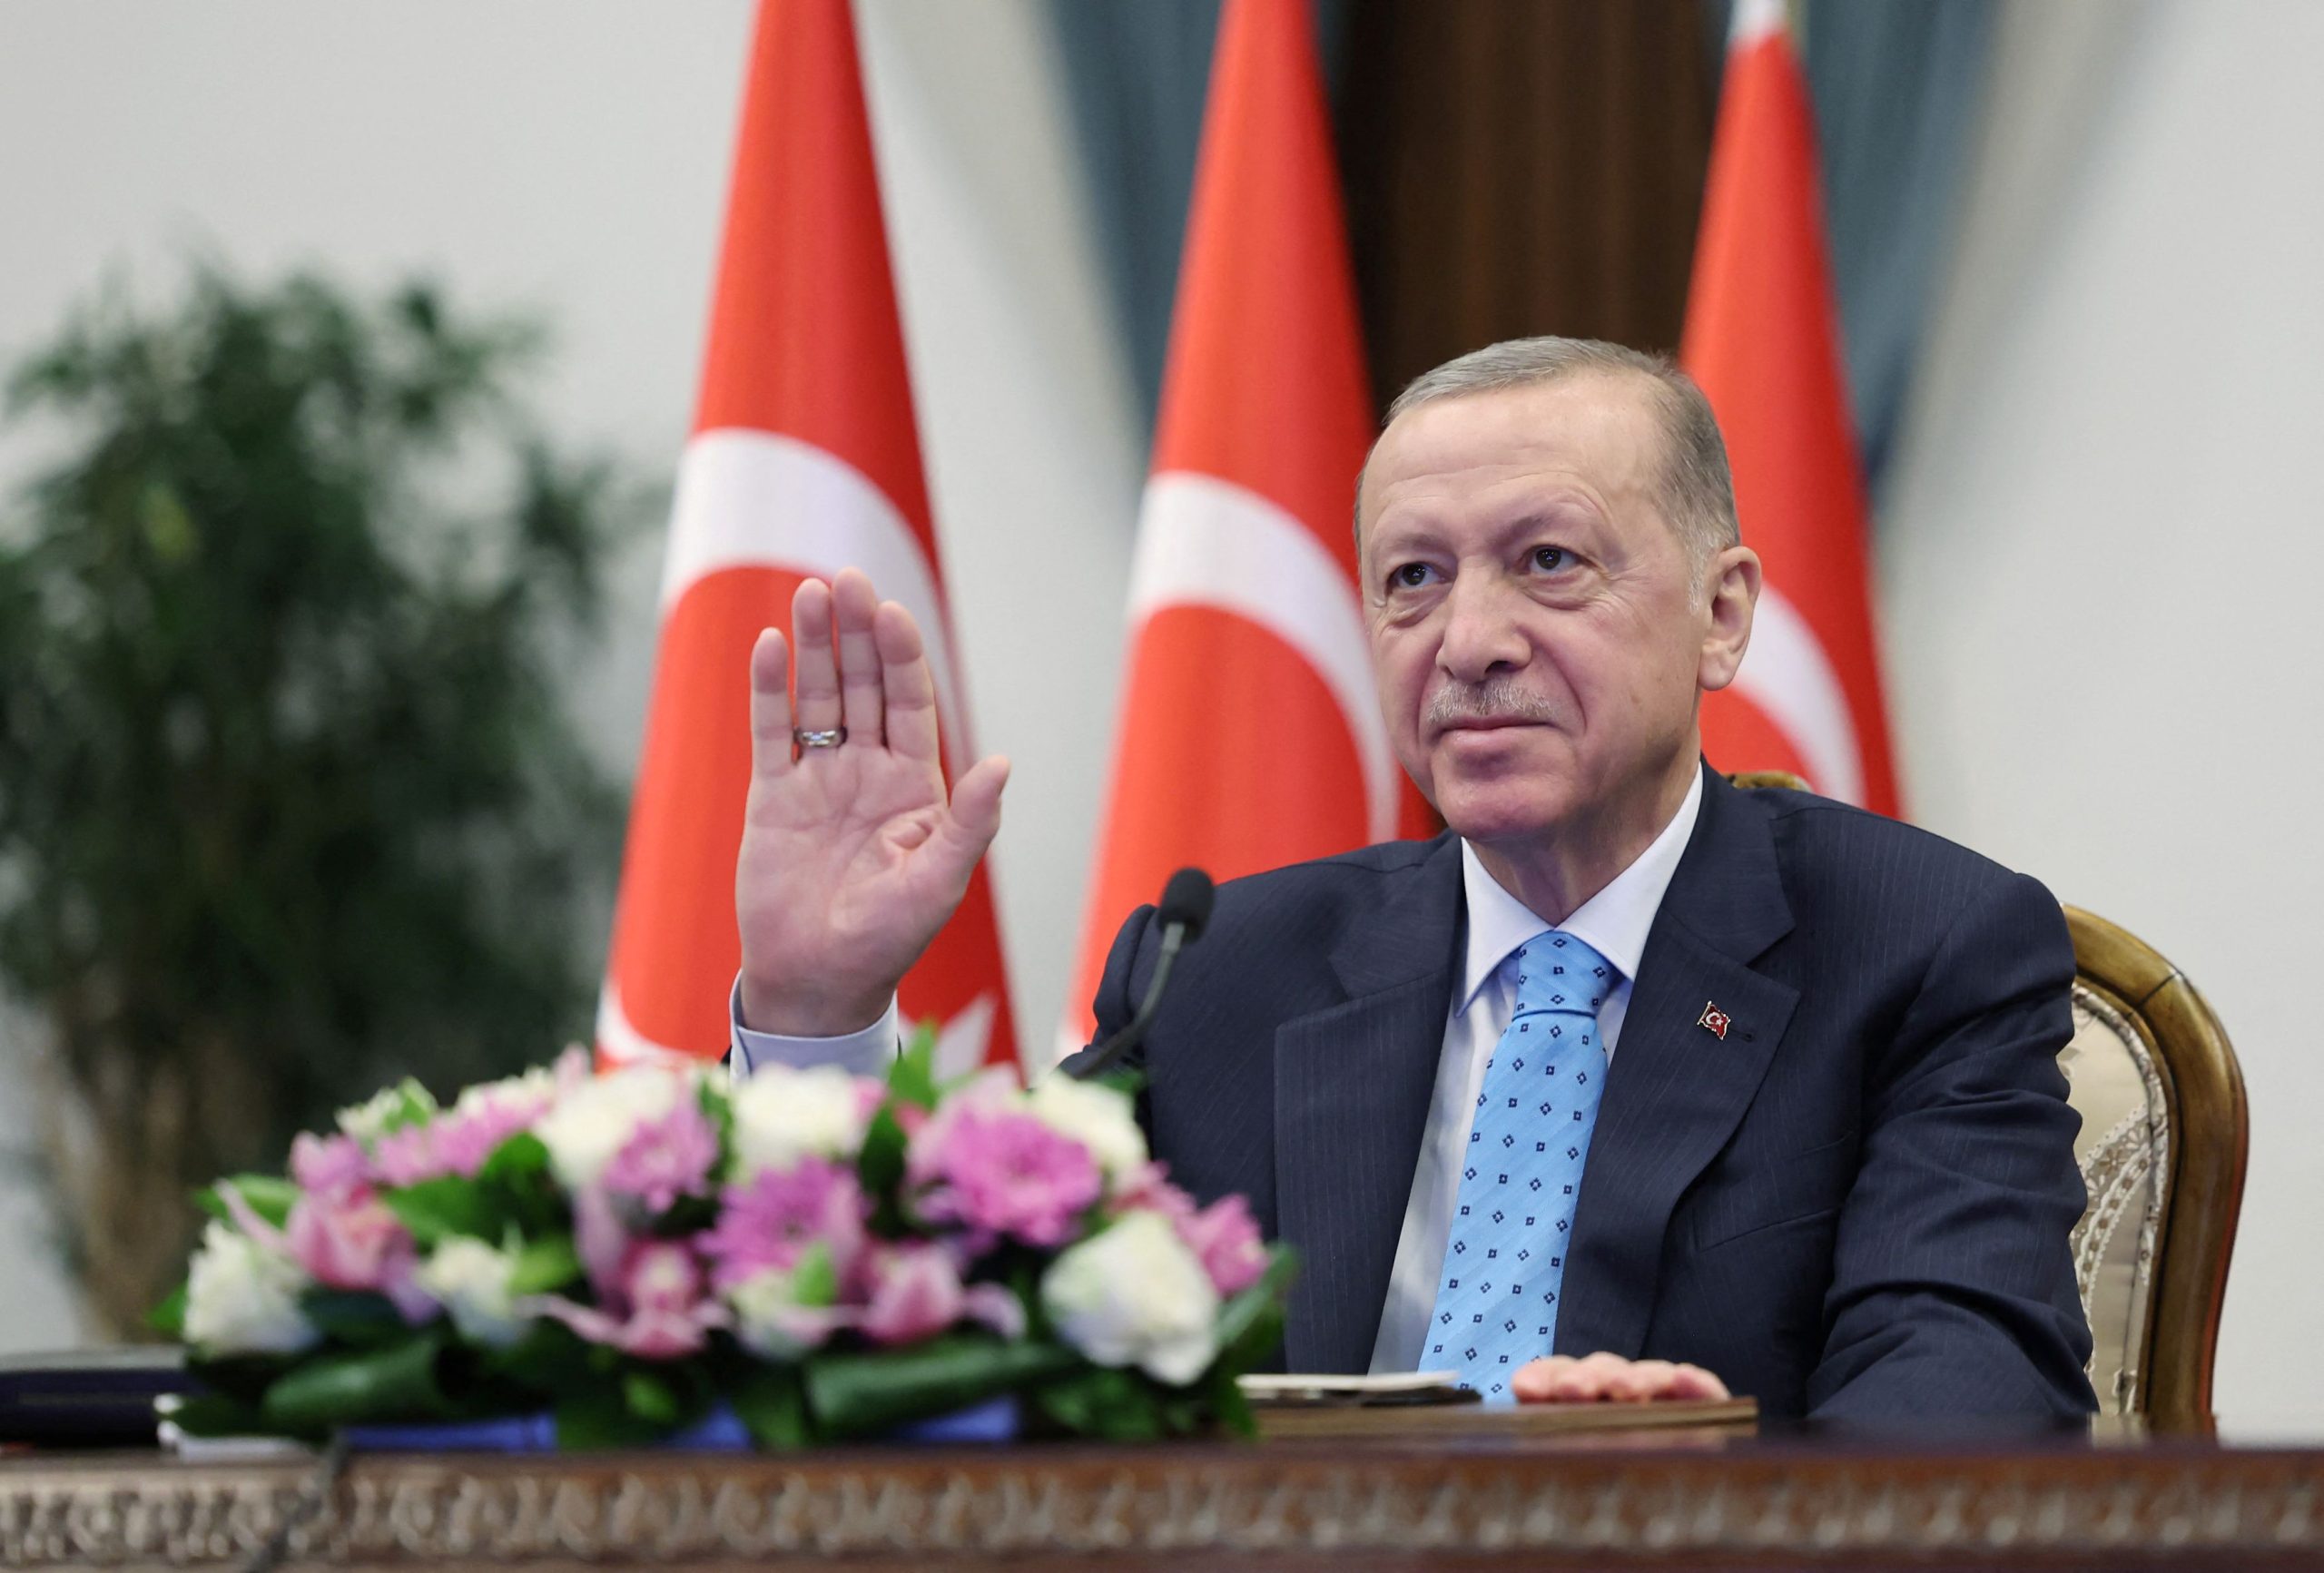 Τουρκία: O Ρ.Τ.Ερντογάν ολοκληρώνει την εκστρατεία του για τις εκλογές με προσευχή στην Αγιά Σοφιά